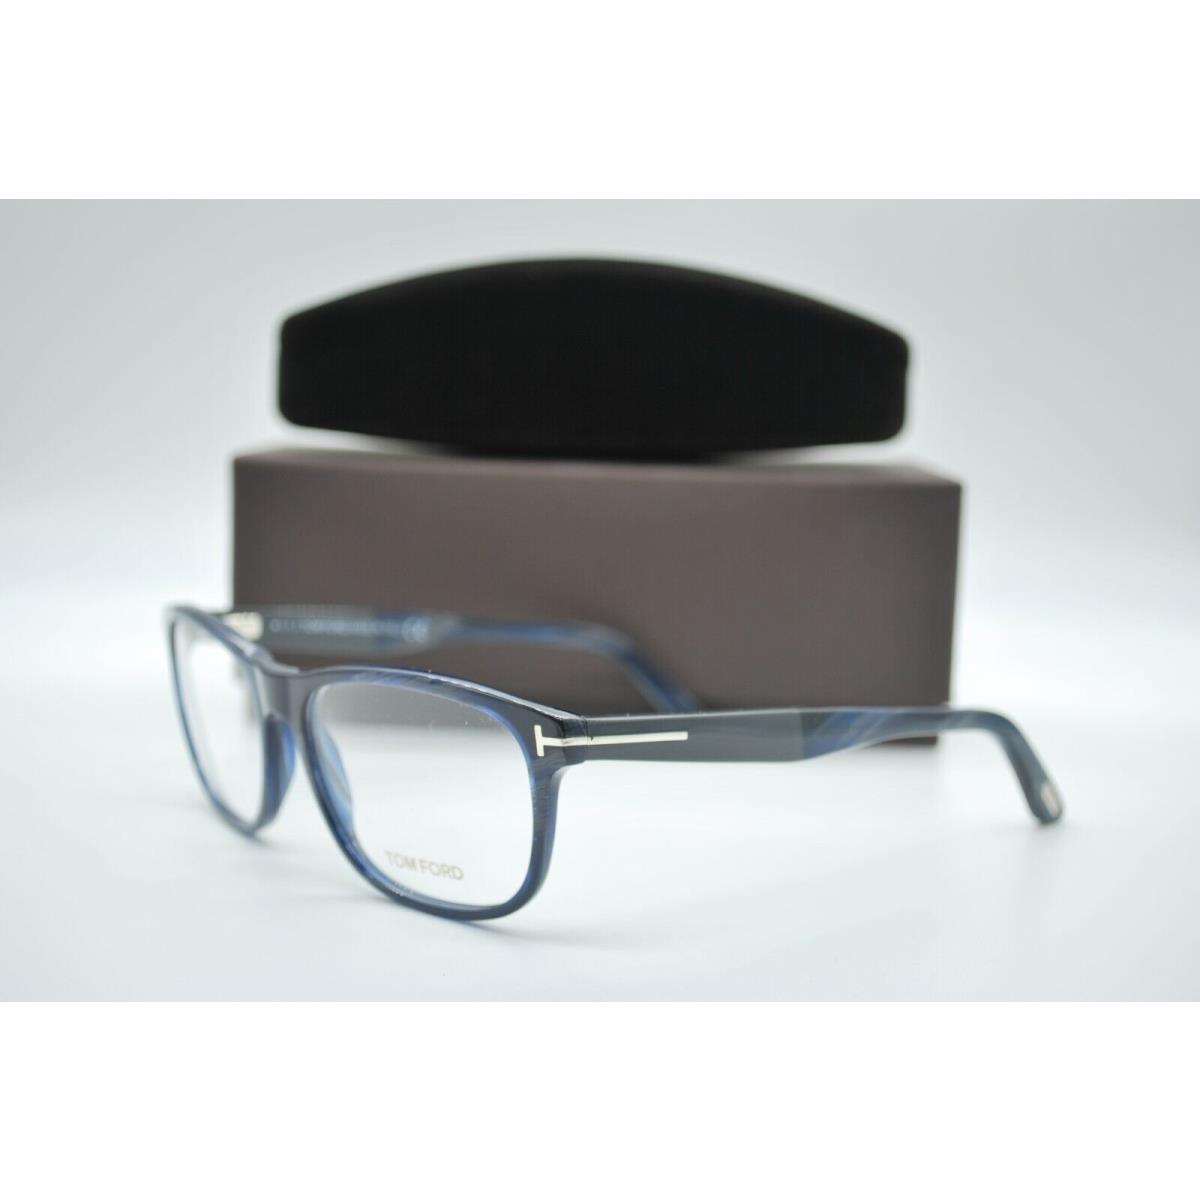 Tom Ford TF 5430 064 Blue Horn Eyeglasses Frames 56-17